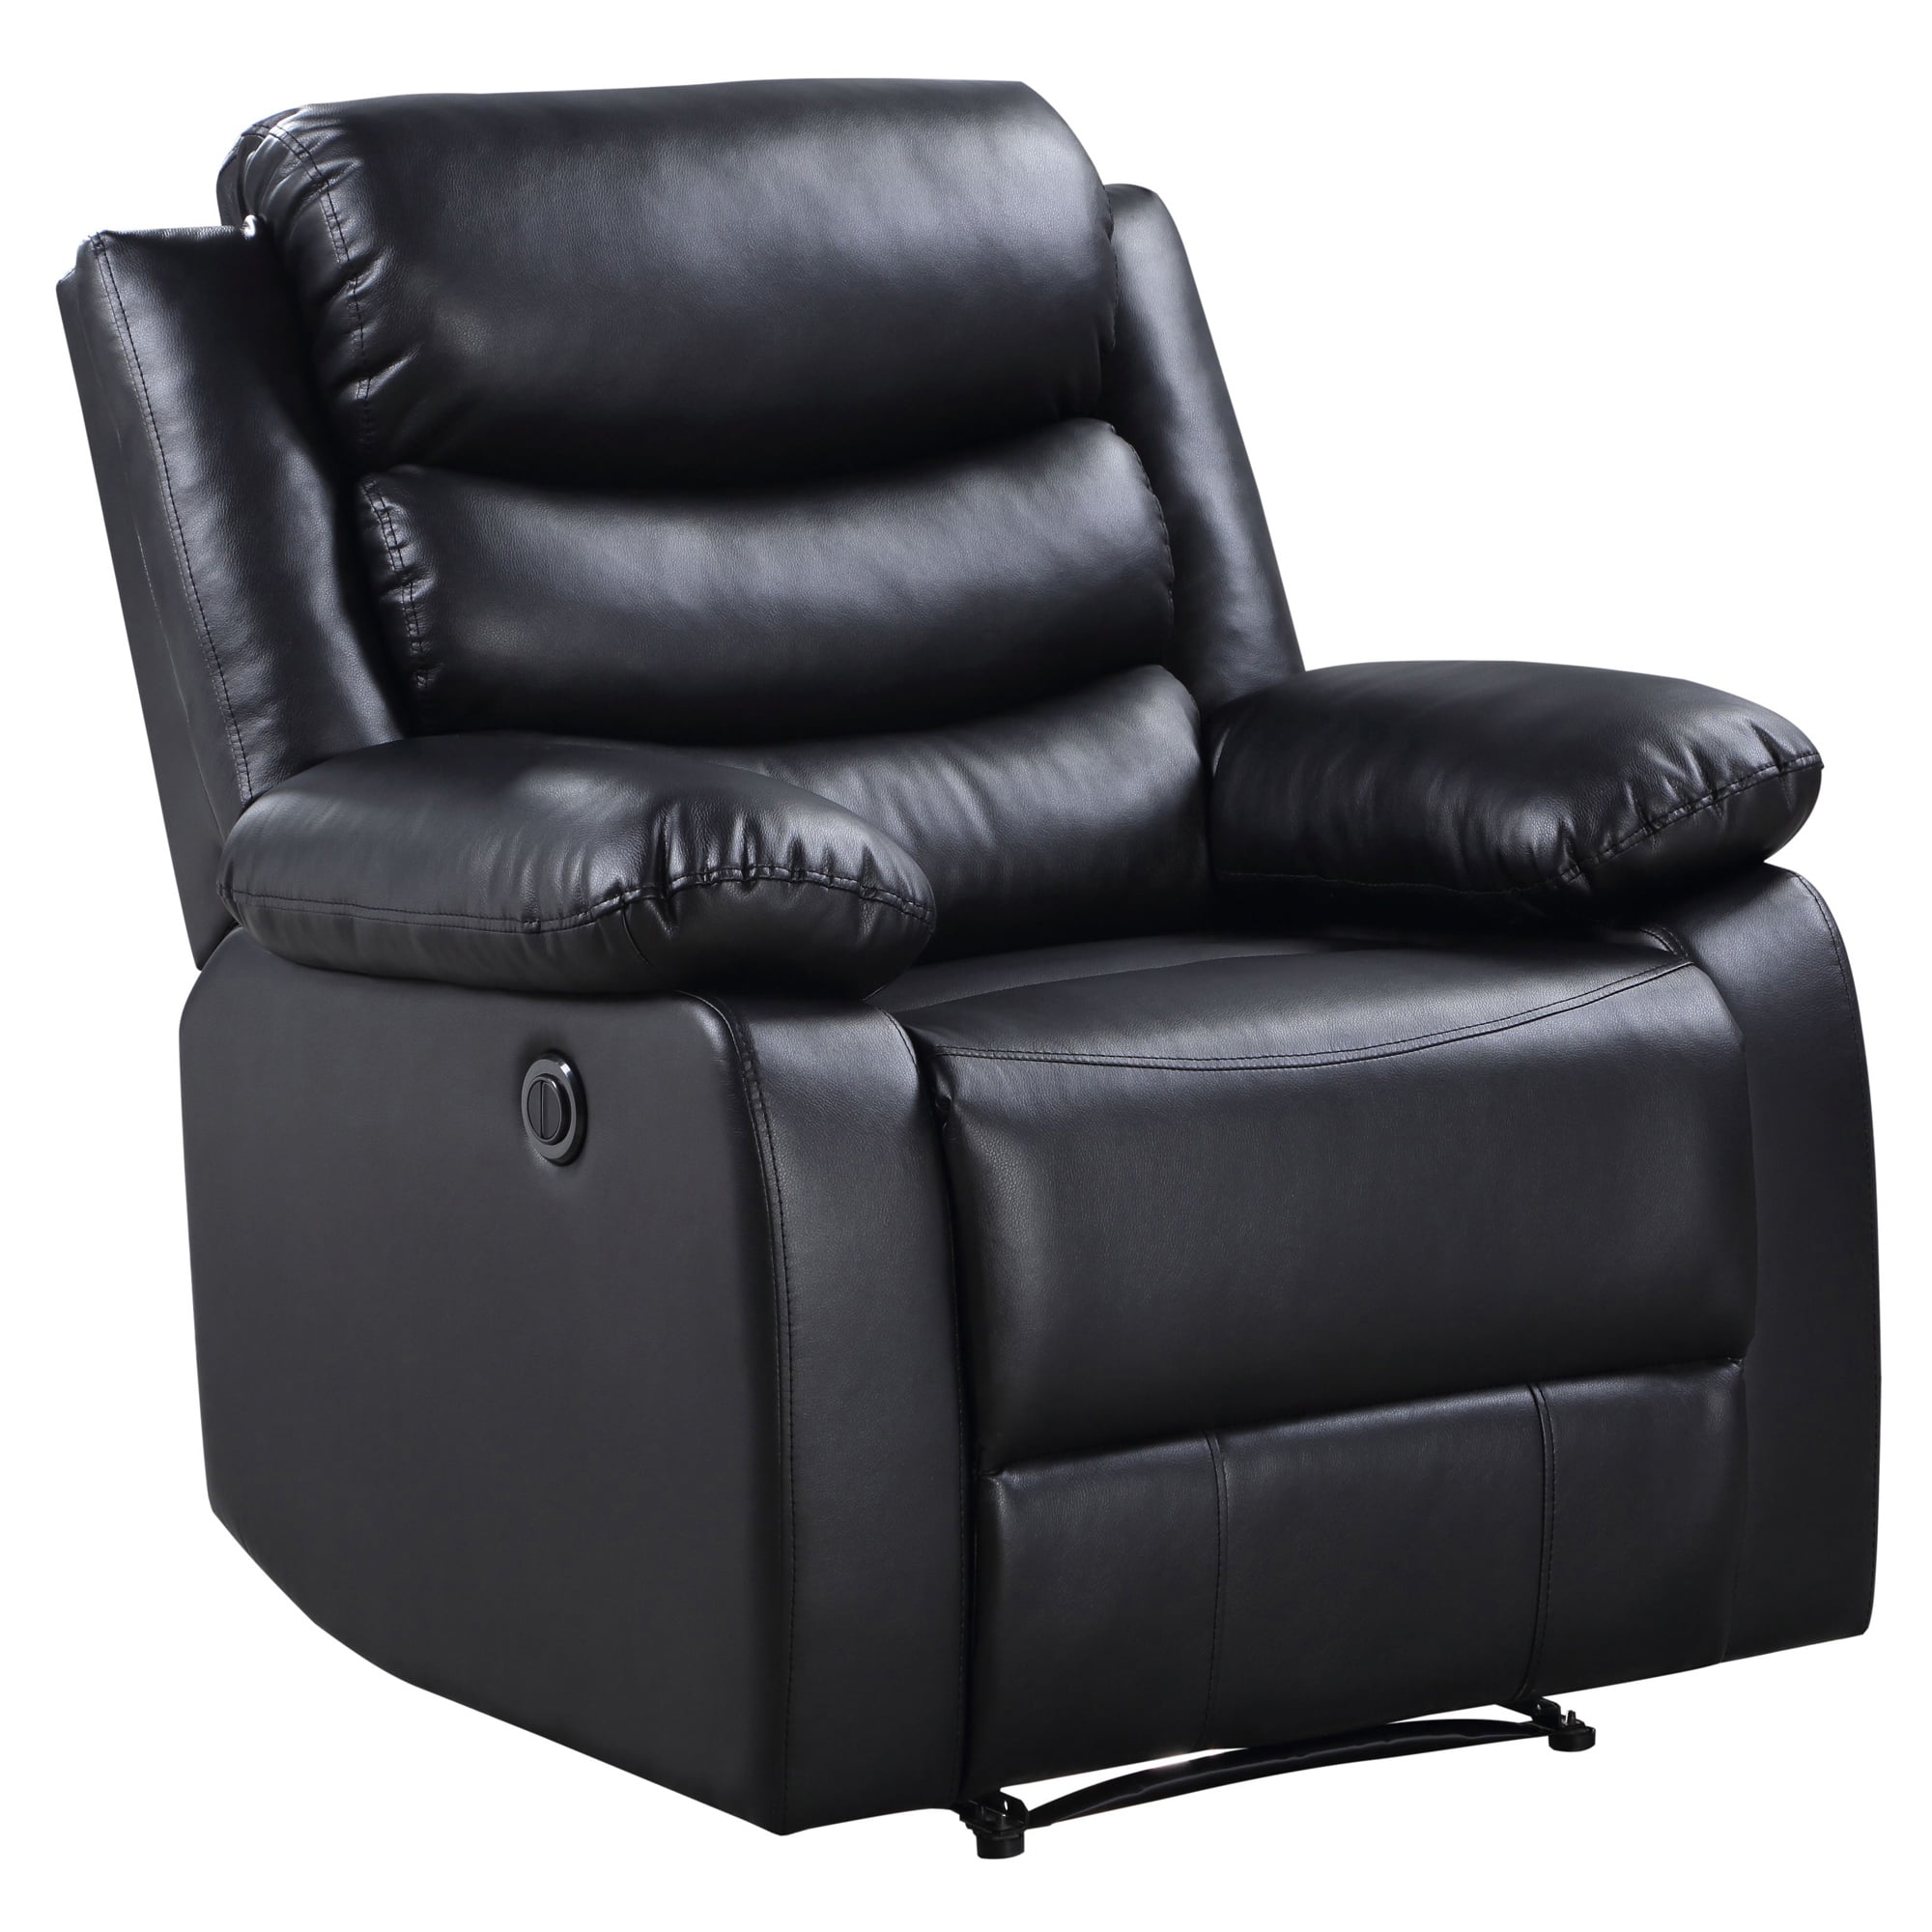 Picture of Acme Furniture 56910 39 x 38 x 41 in. Eilbra Power Recliner, Black PU